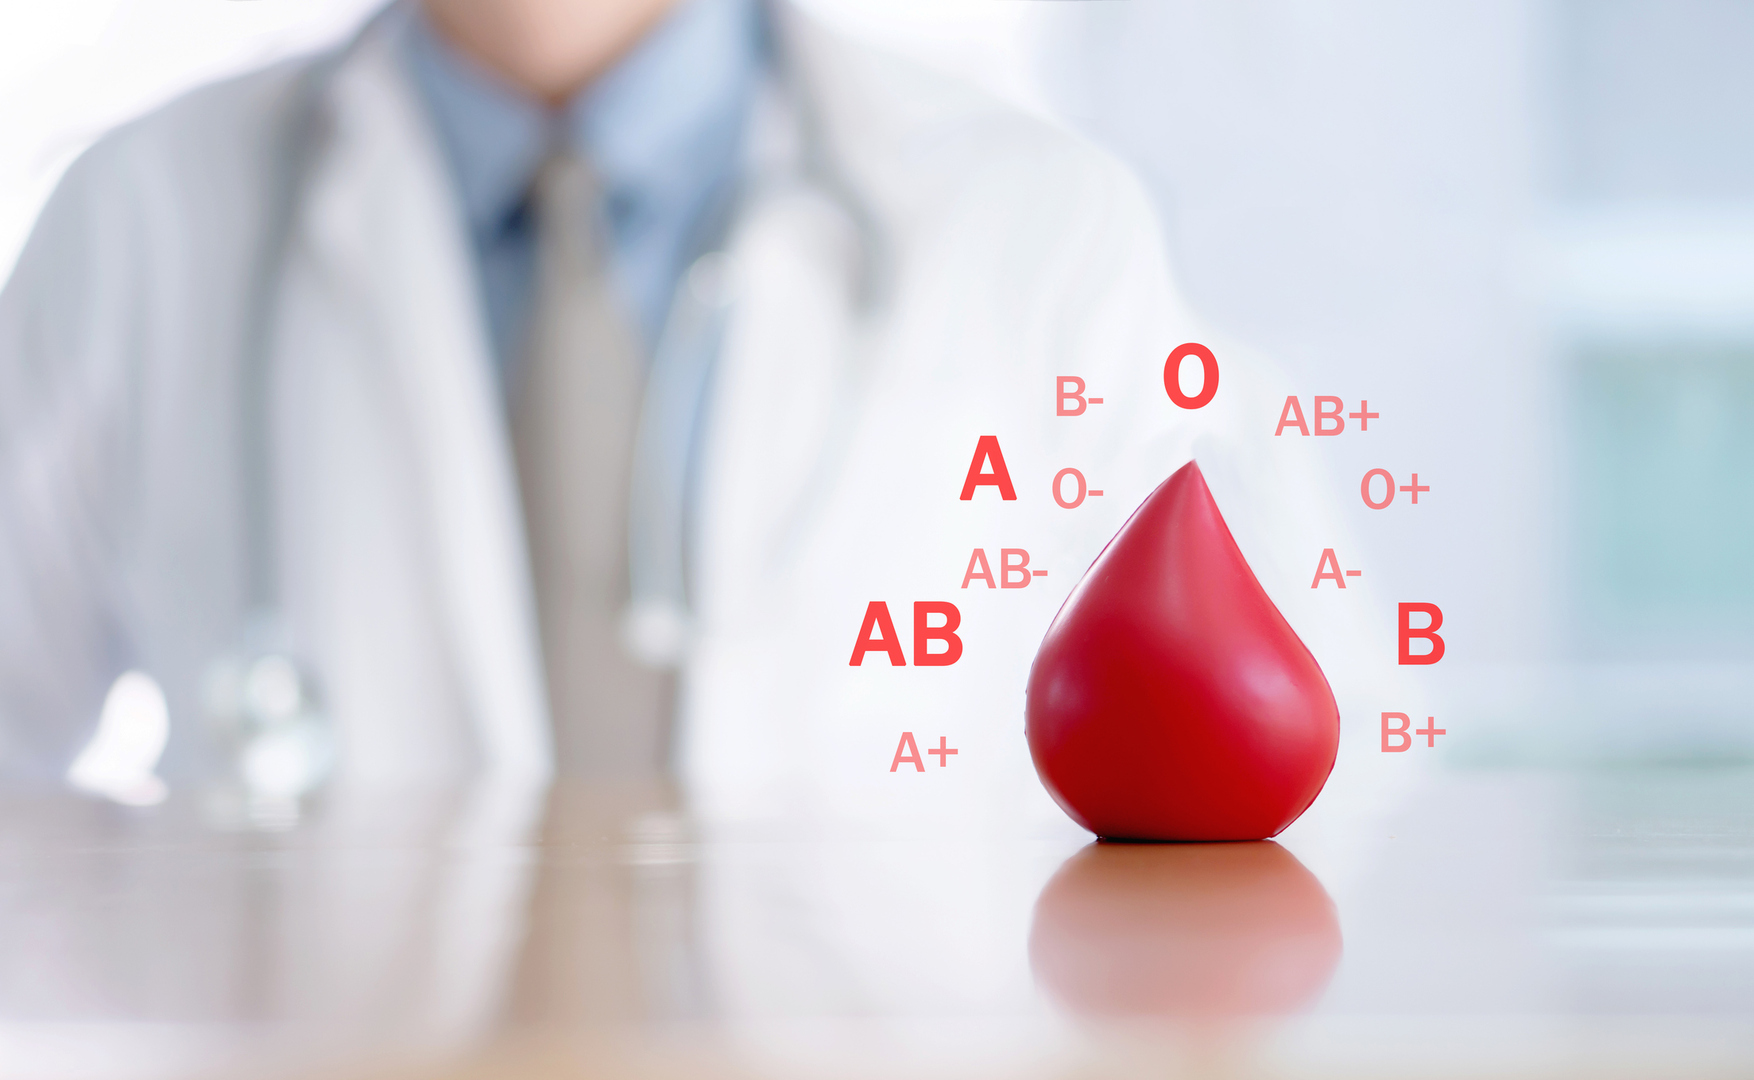 قد تكون أكثر عرضة للإصابة بالسكري والسرطان..أنواع فصيلة الدم تكشف احتمالية إصابتك بالأمراض